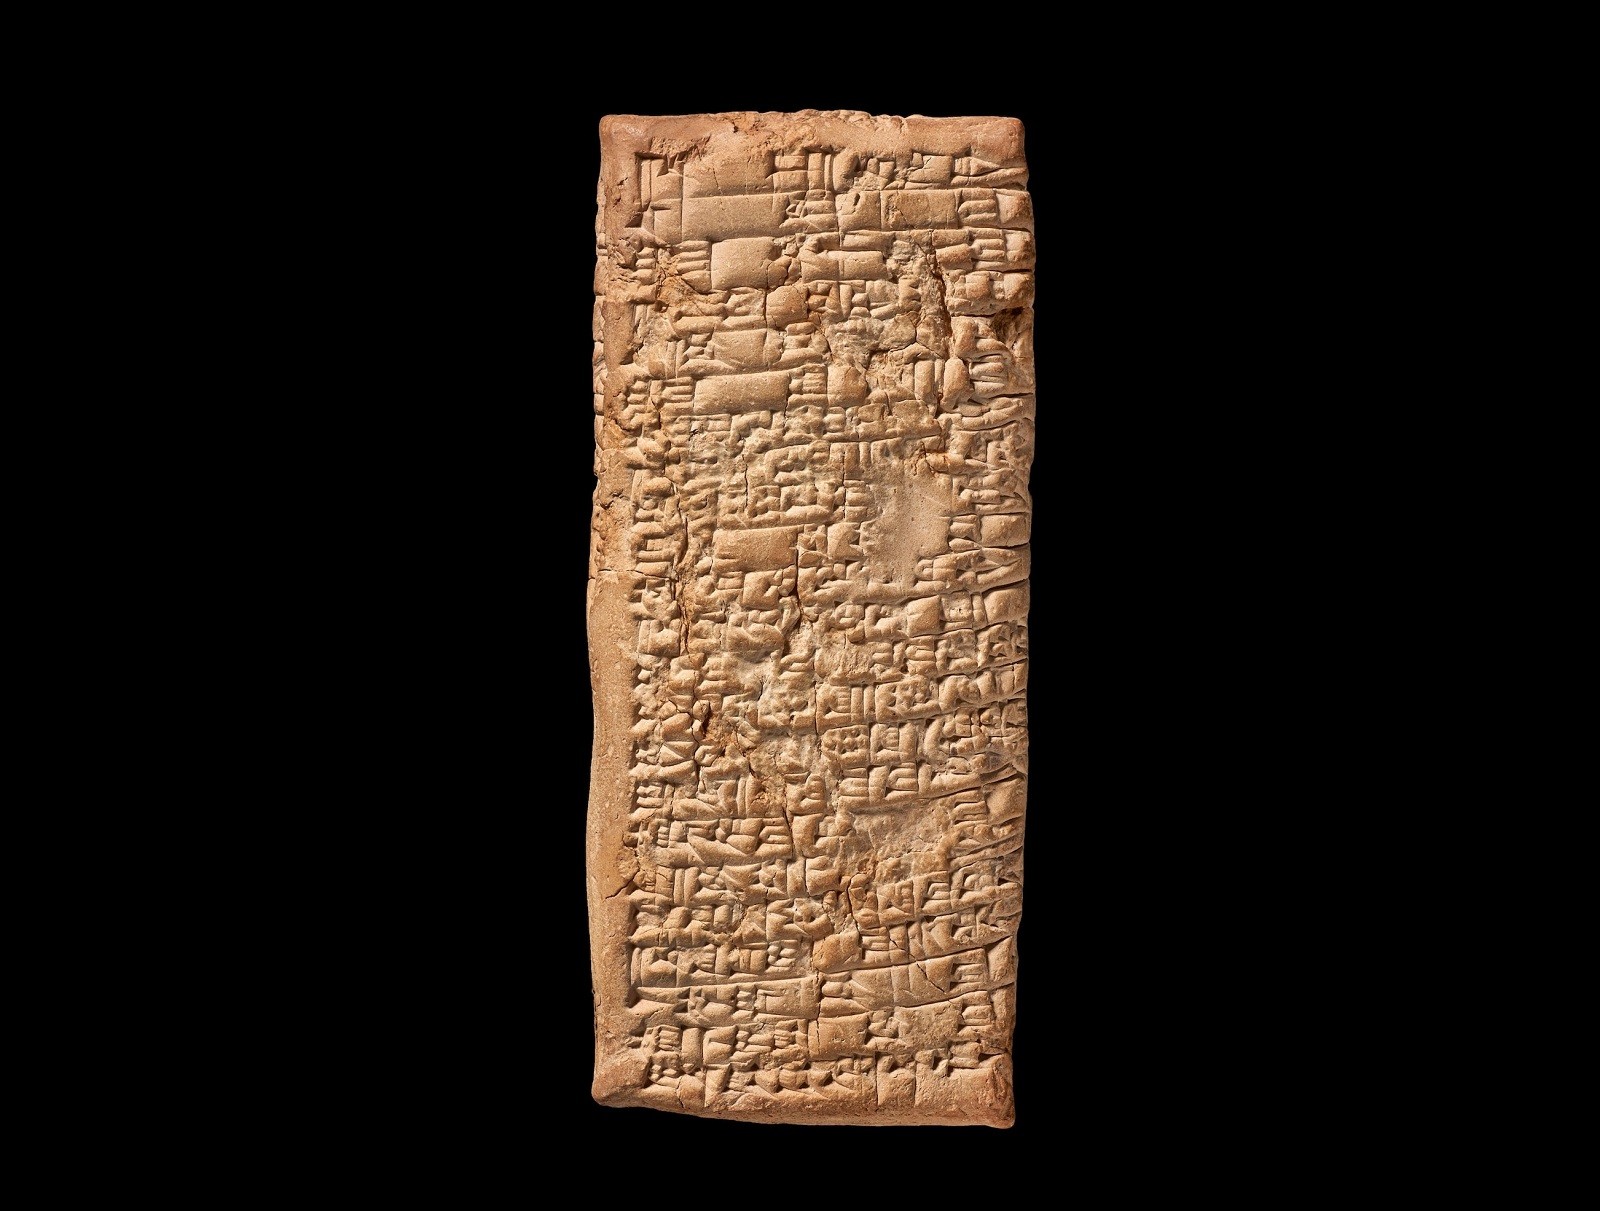 Prehistoryczny list odszyfrowany. Jego autor miał wielki problem z pewnym handlarzem